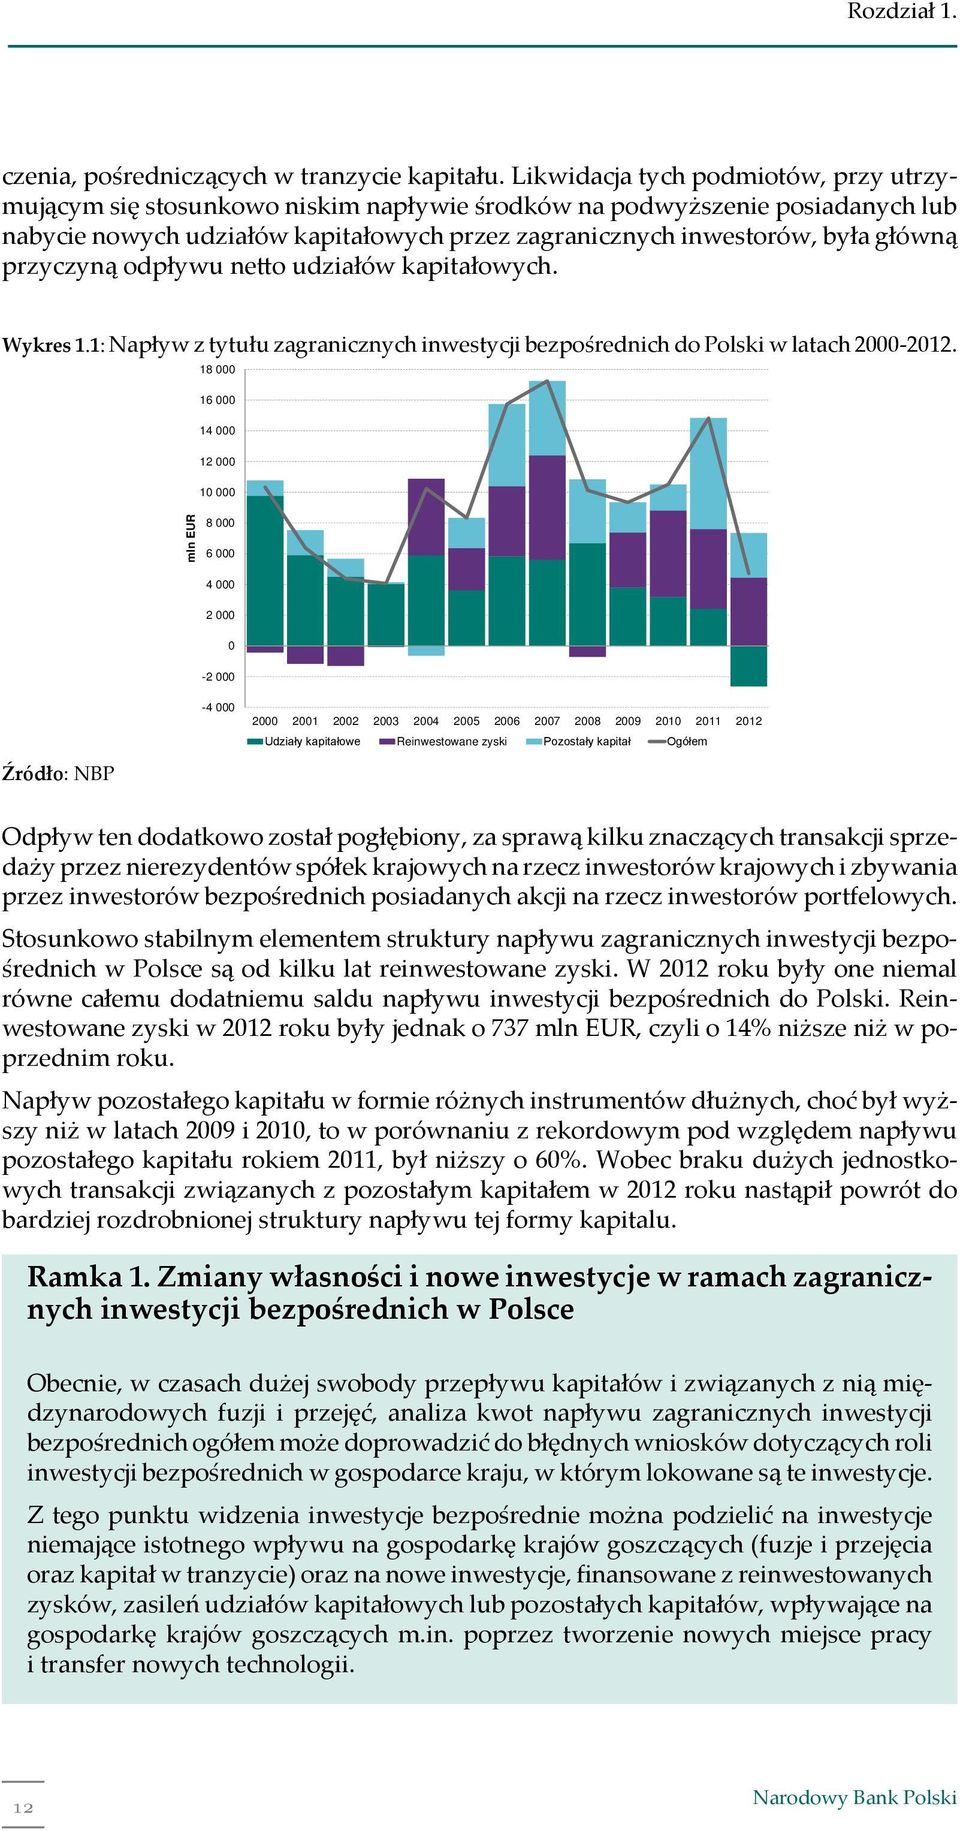 przyczyną odpływu ne o udziałów kapitałowych. Wykres 1.1: Napływ z tytułu zagranicznych inwestycji bezpośrednich do Polski w latach 2000-2012.